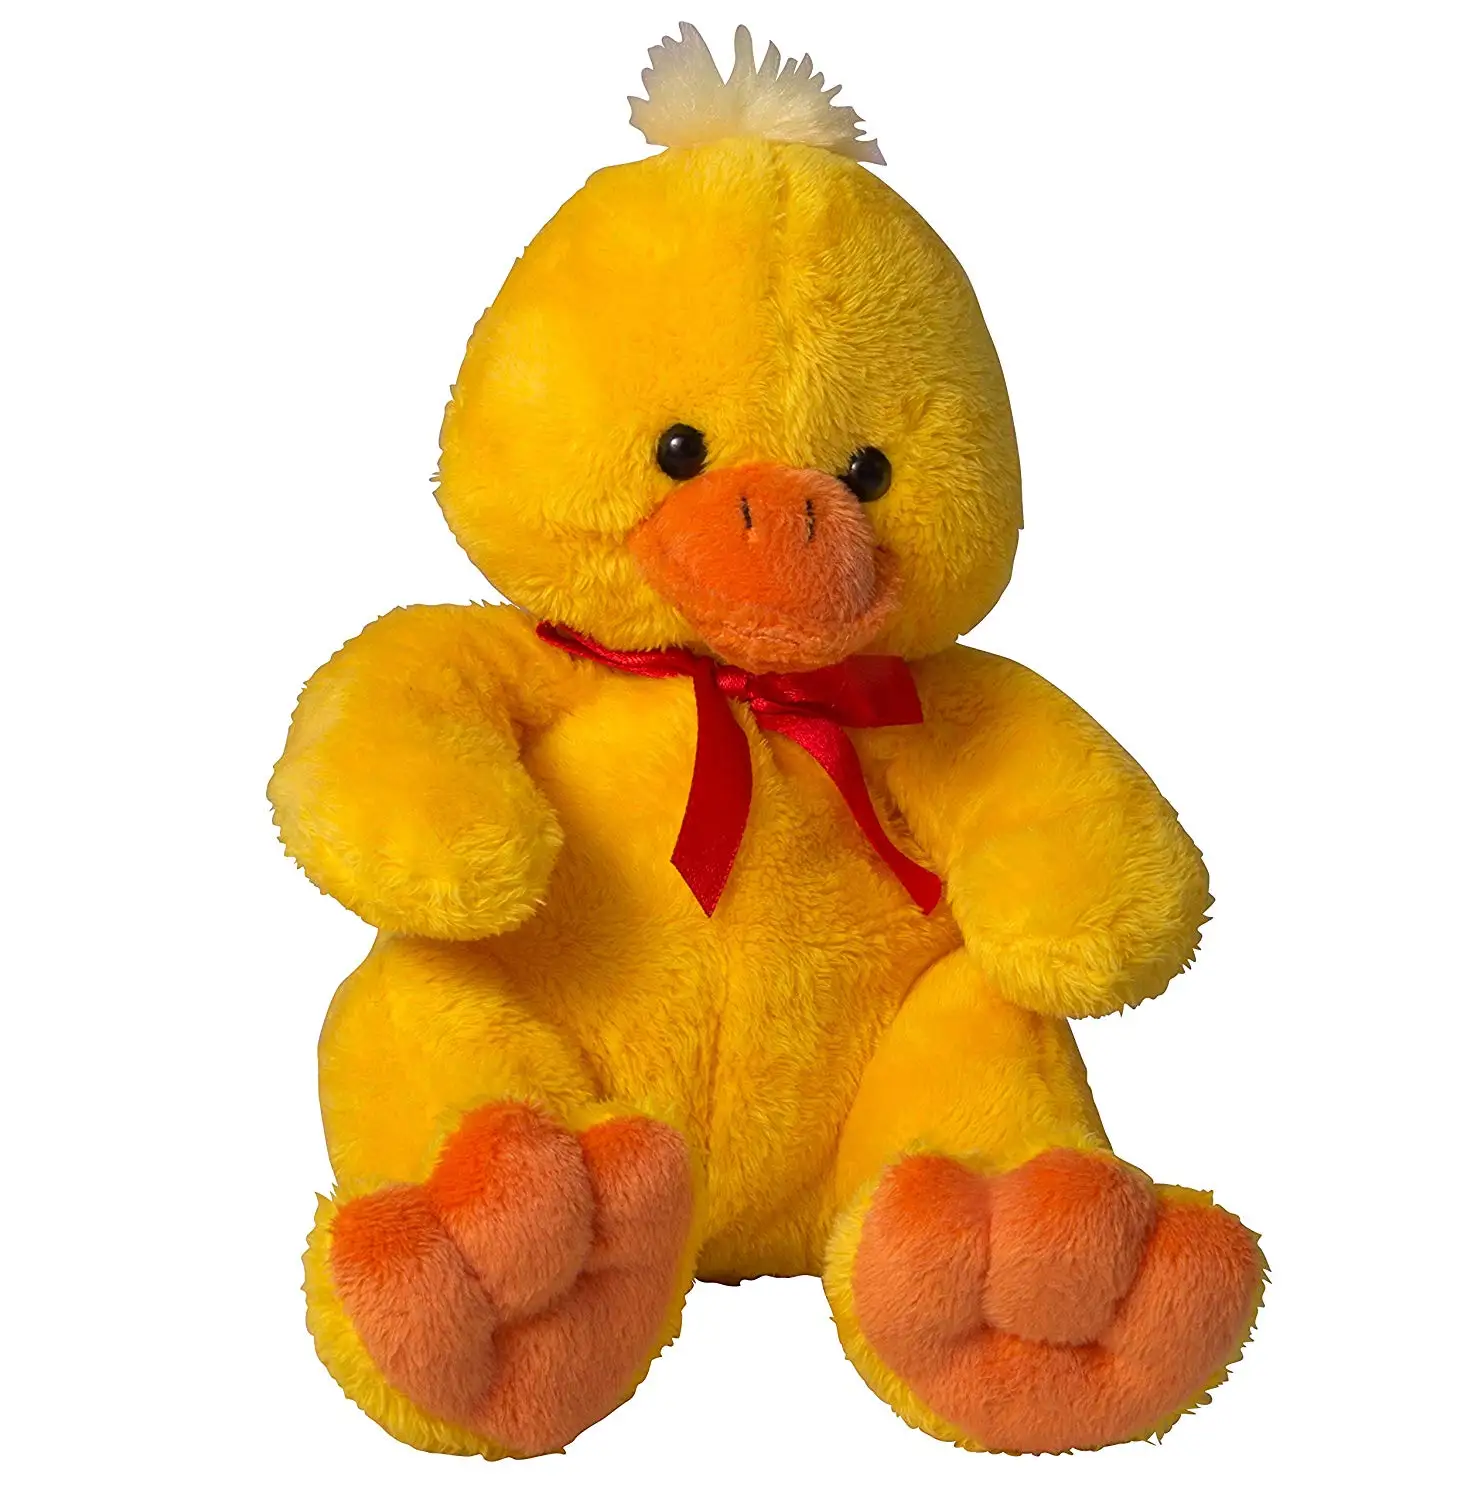 ducky momo stuffed animal